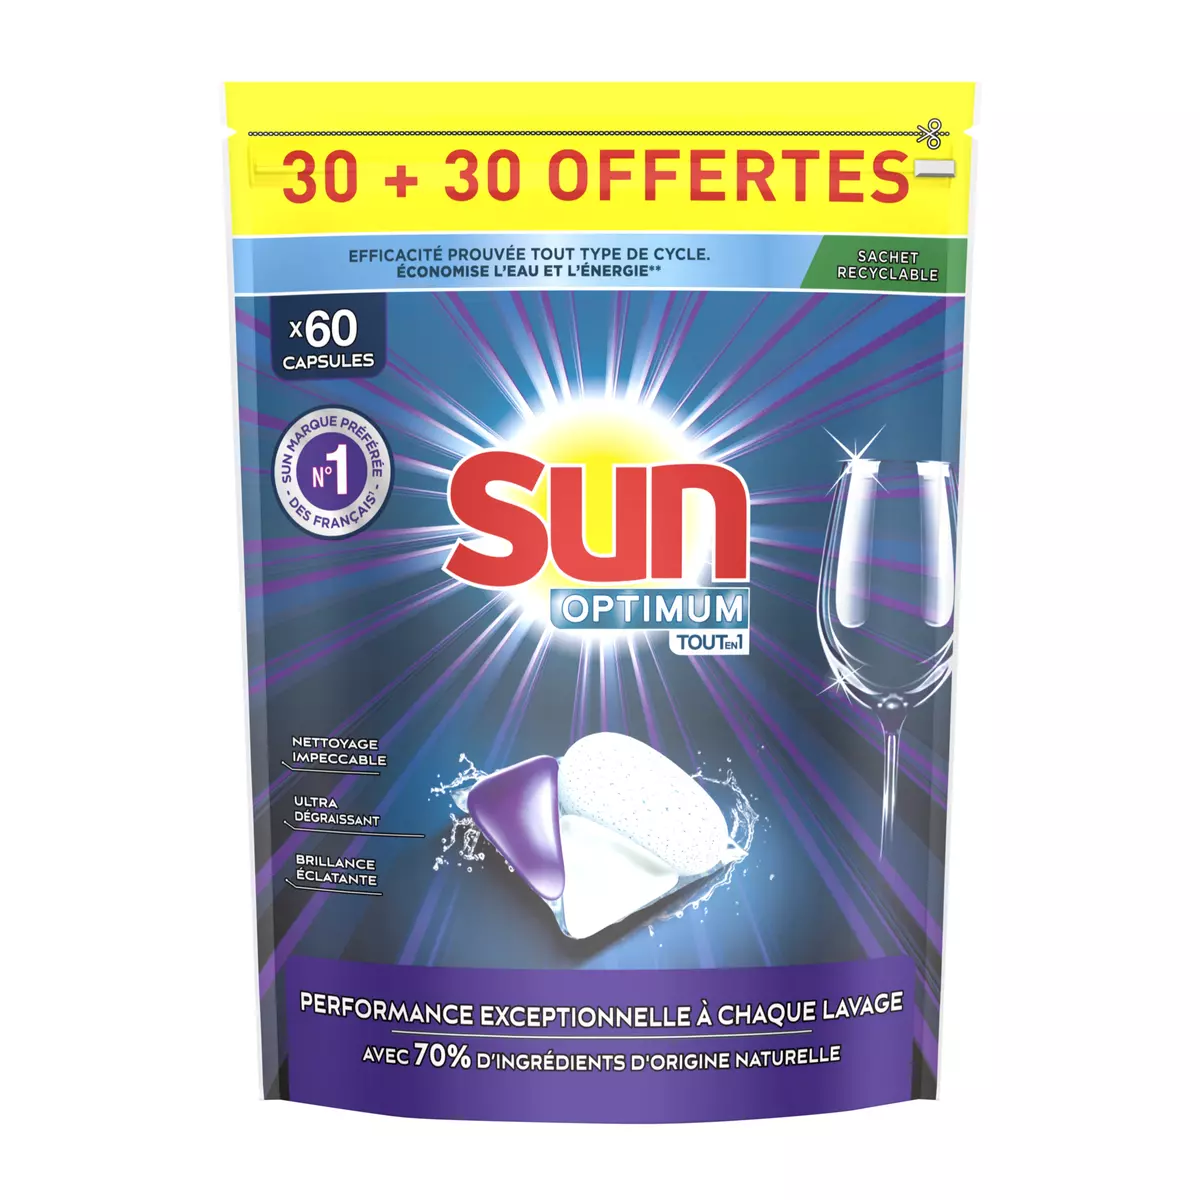 SUN Optimum capsules lave-vaisselle tout en 1 2x30 capsules